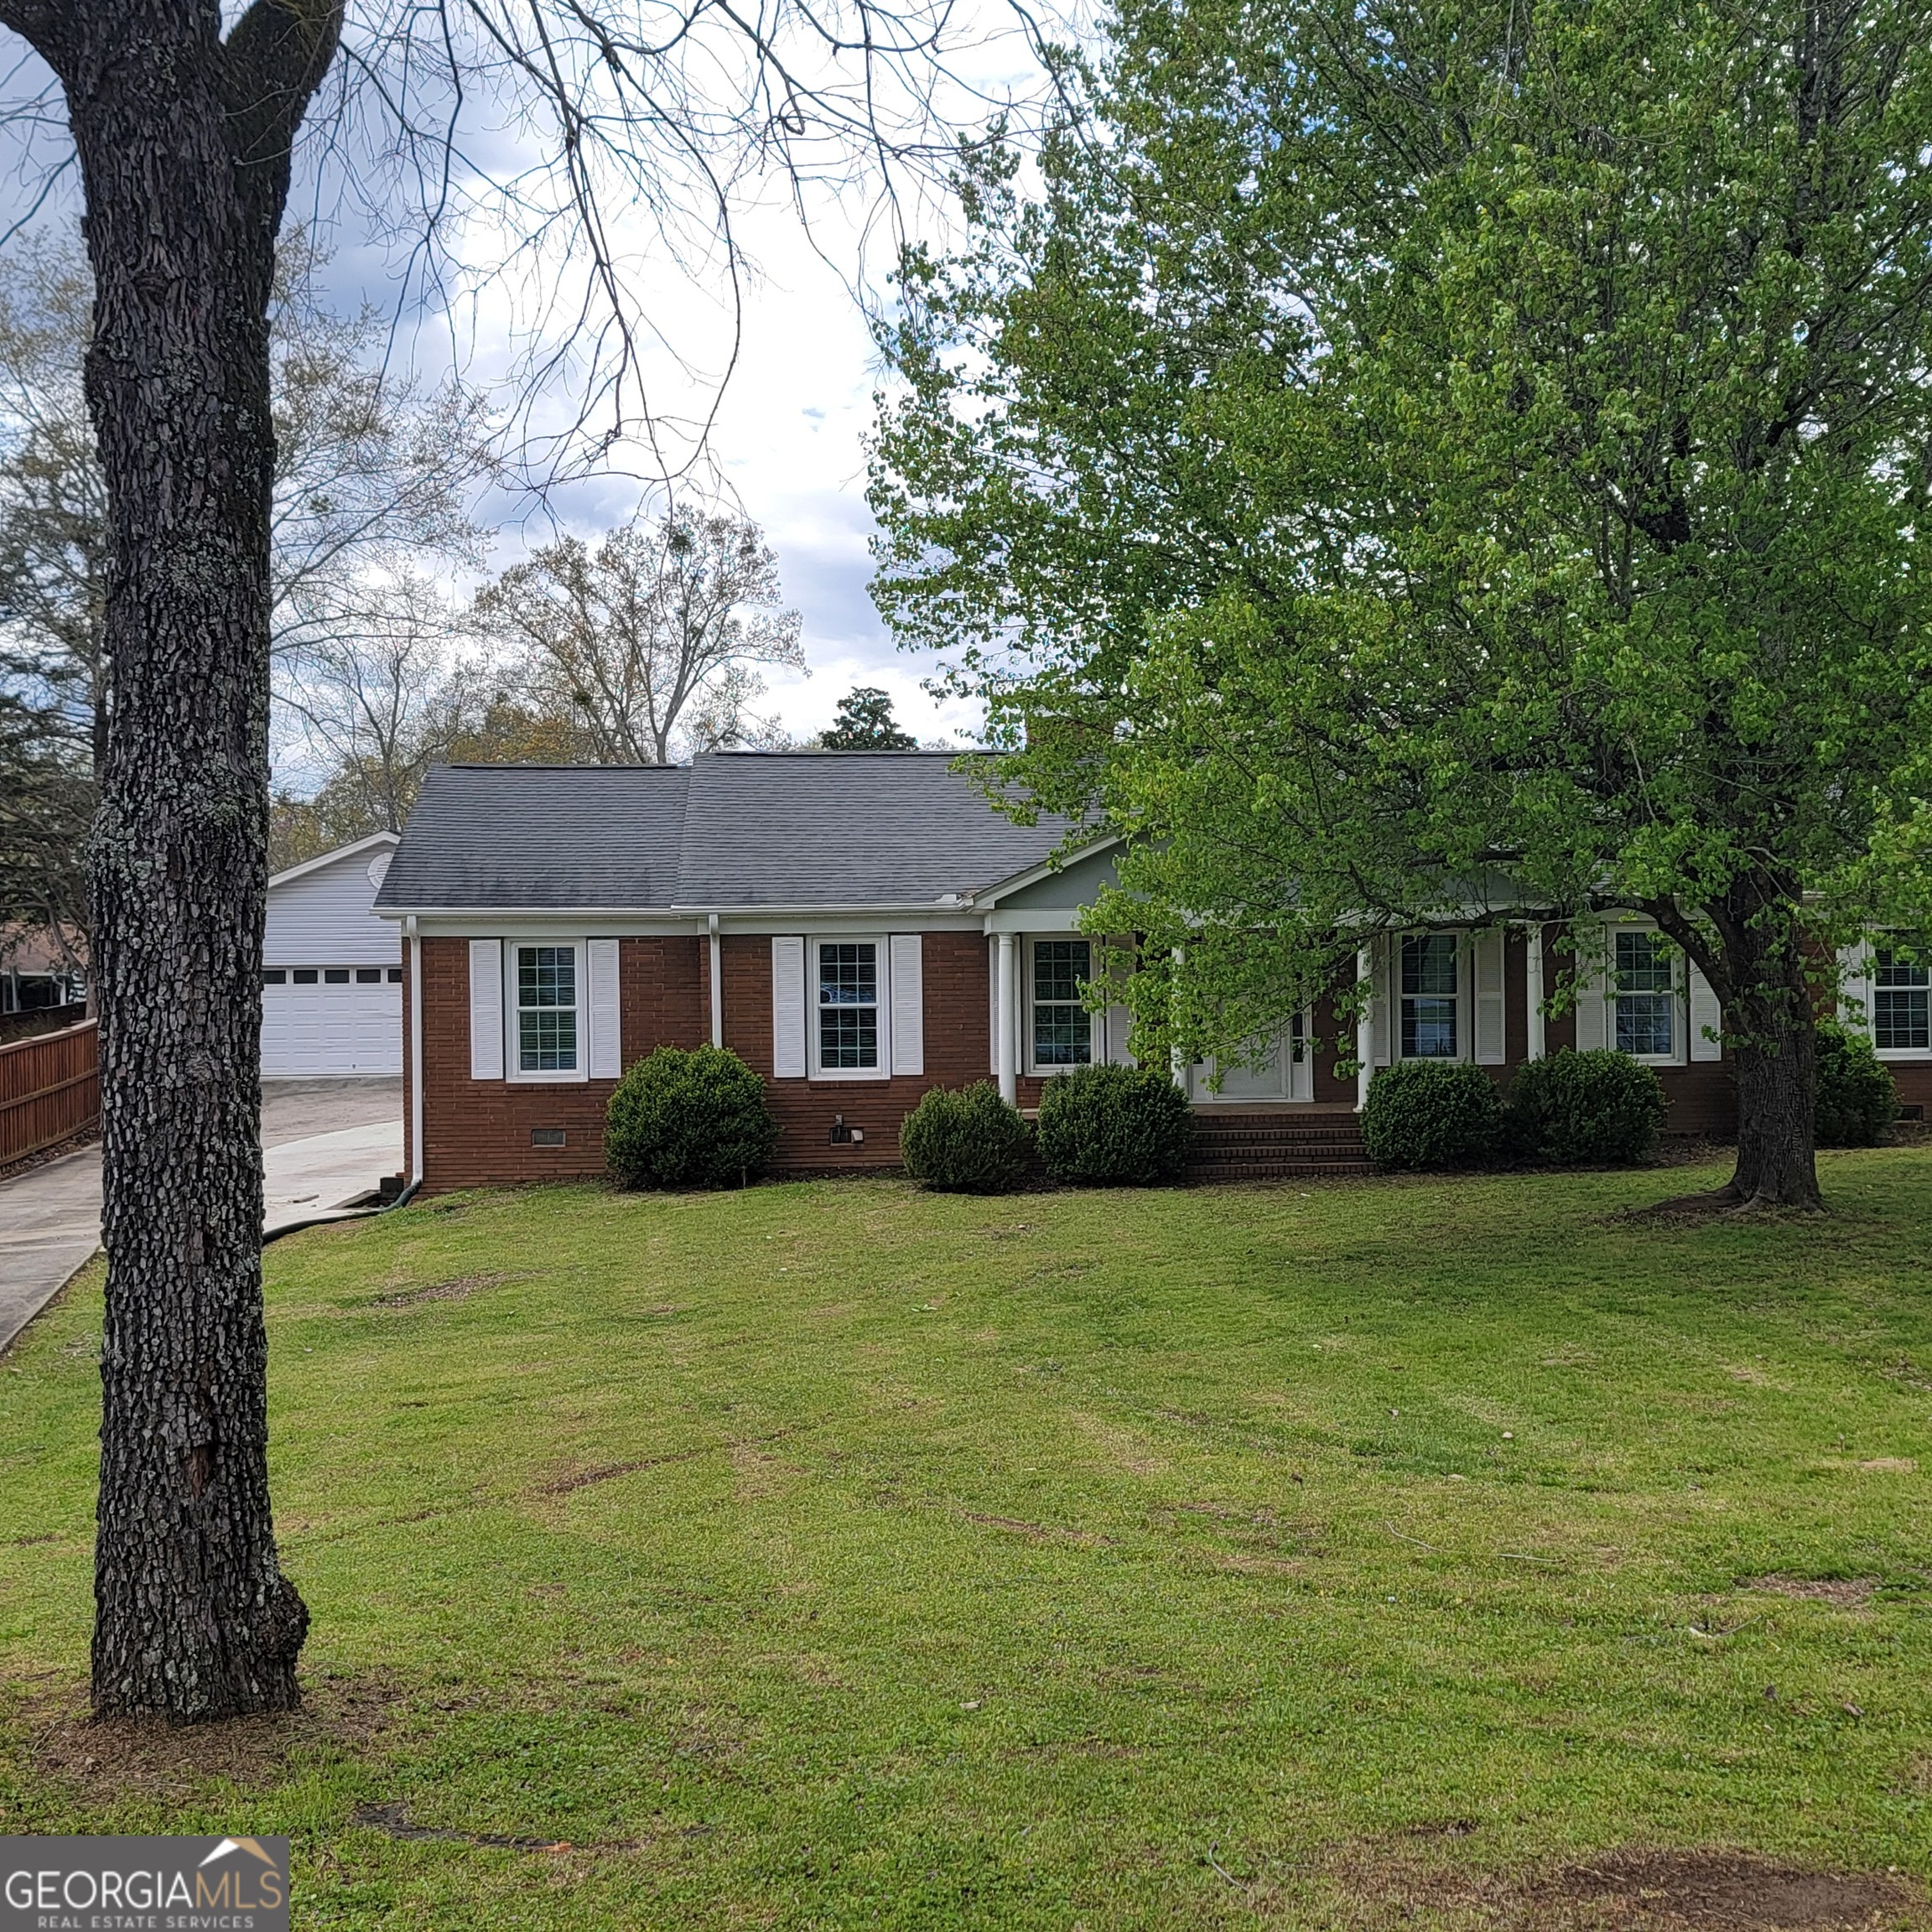 View Elberton, GA 30635 house